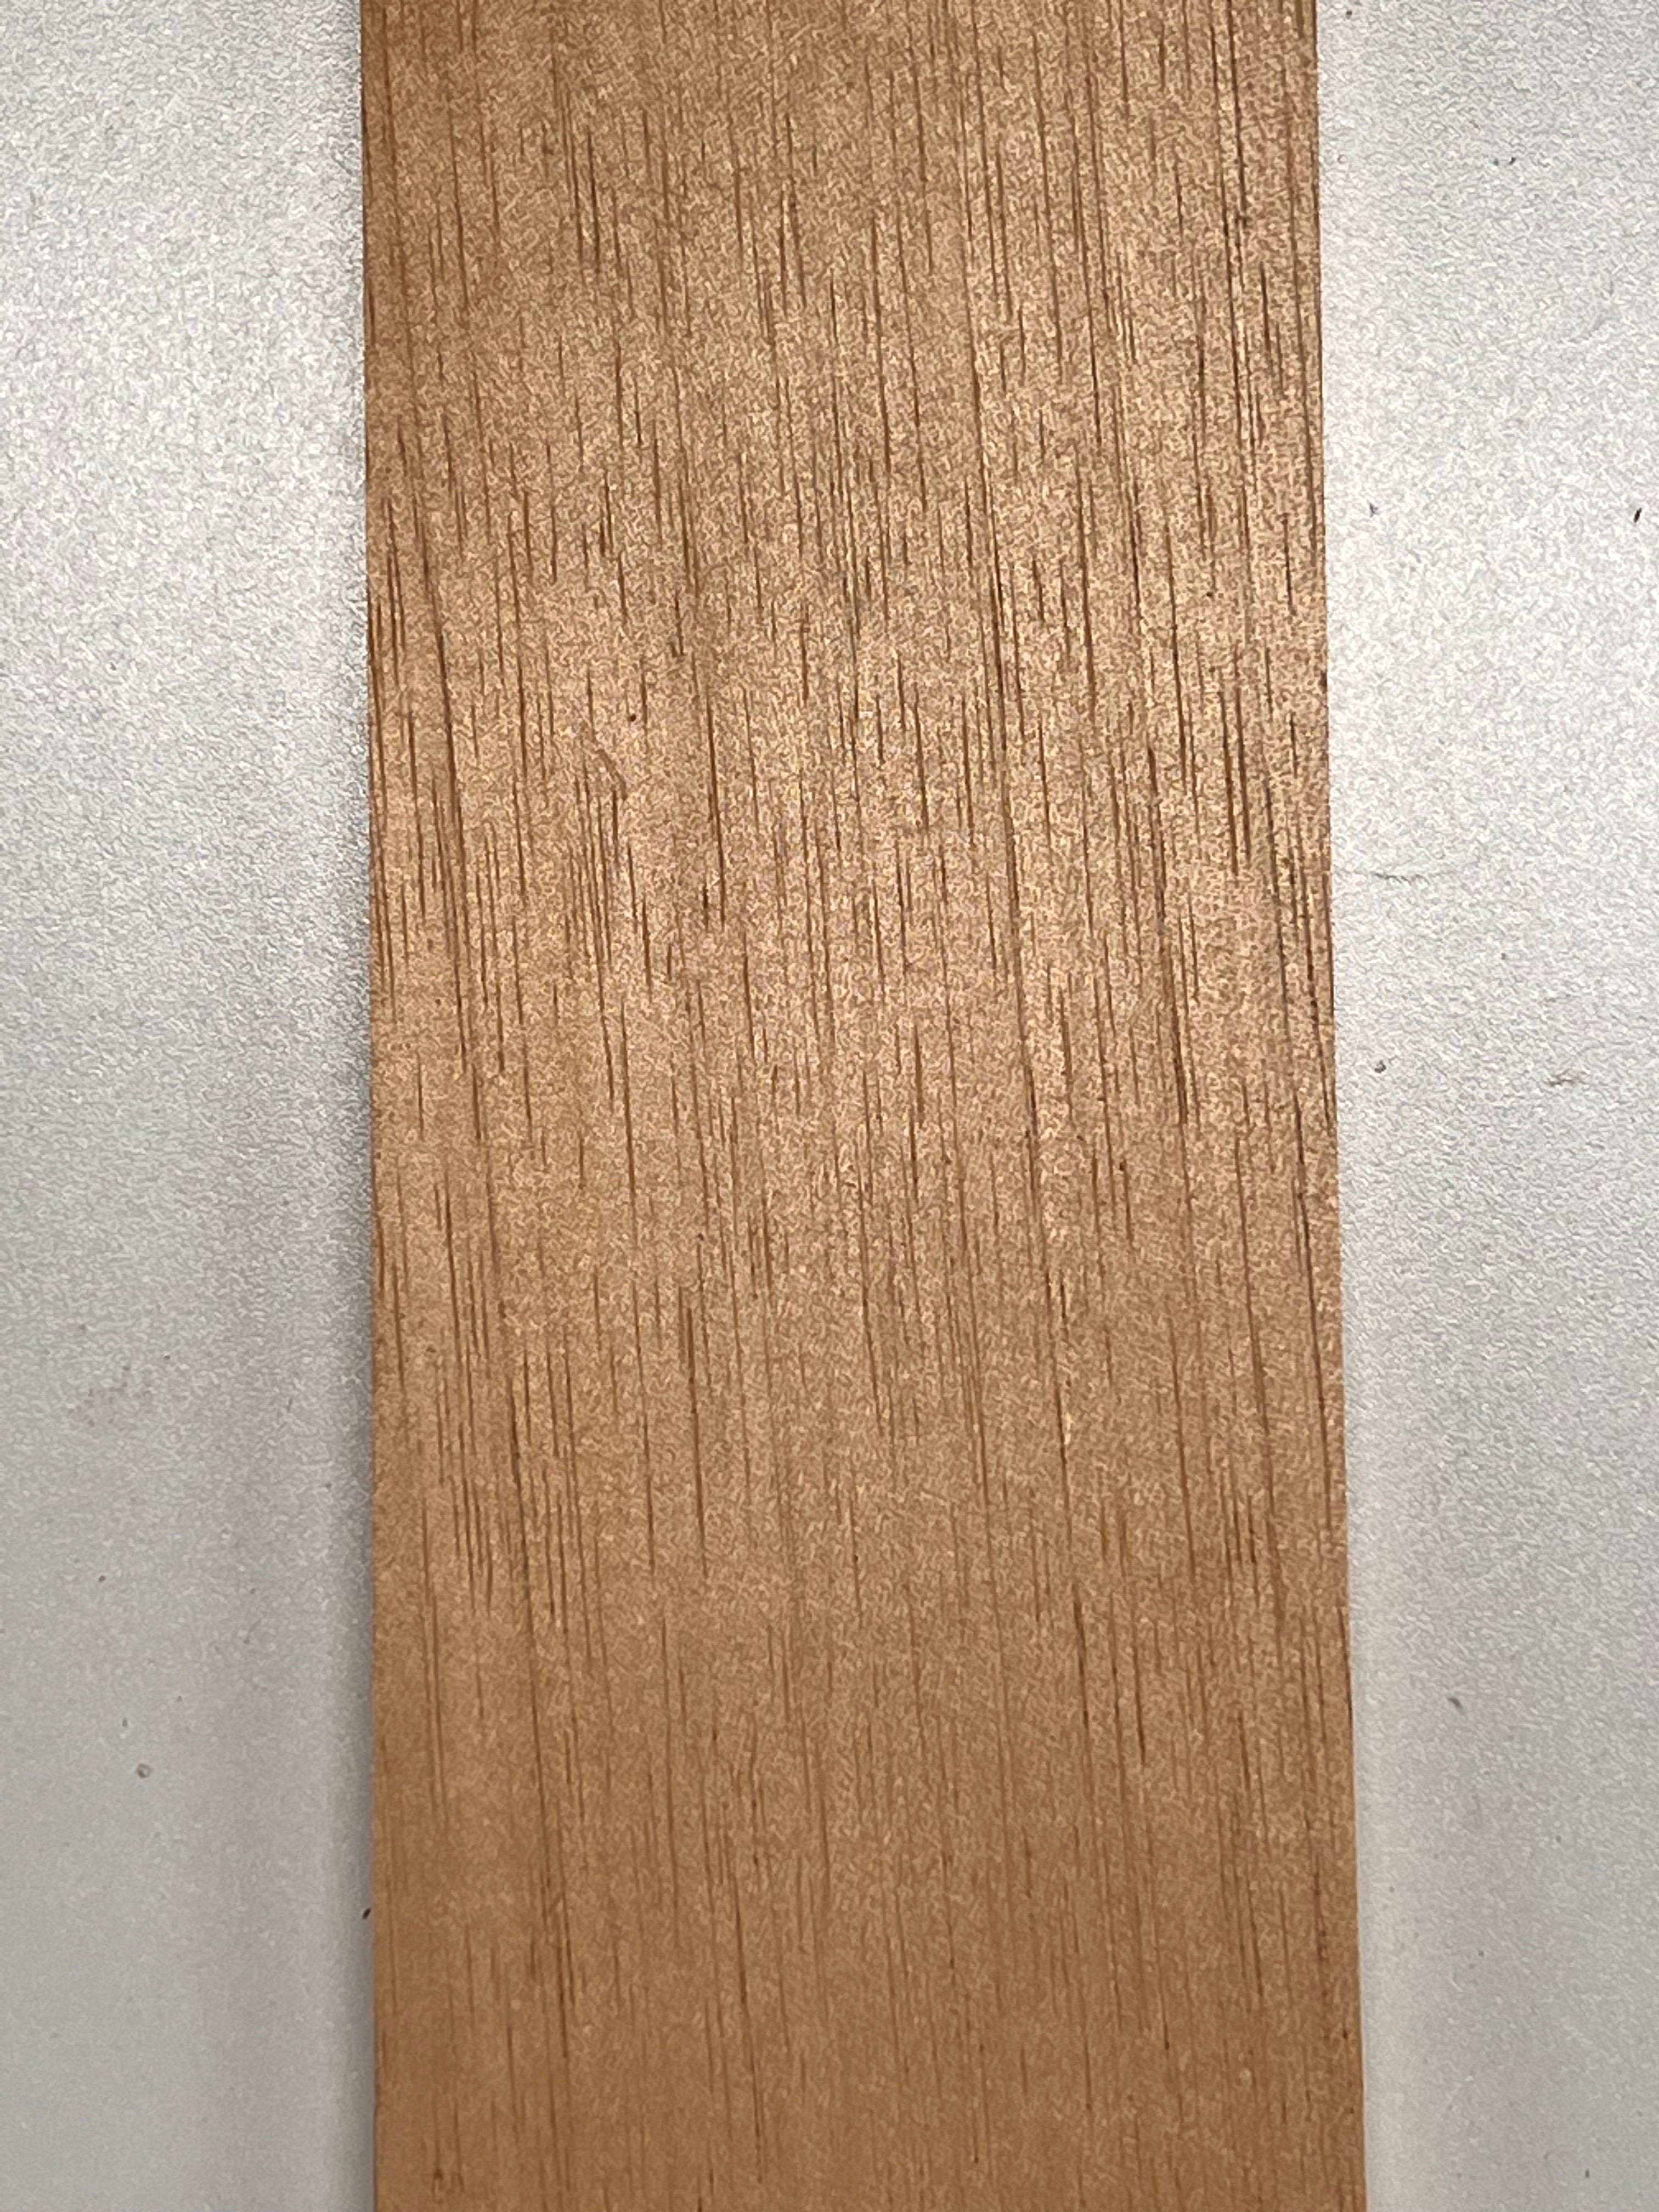 Tableros de madera de cedro español finos Artesanías en madera